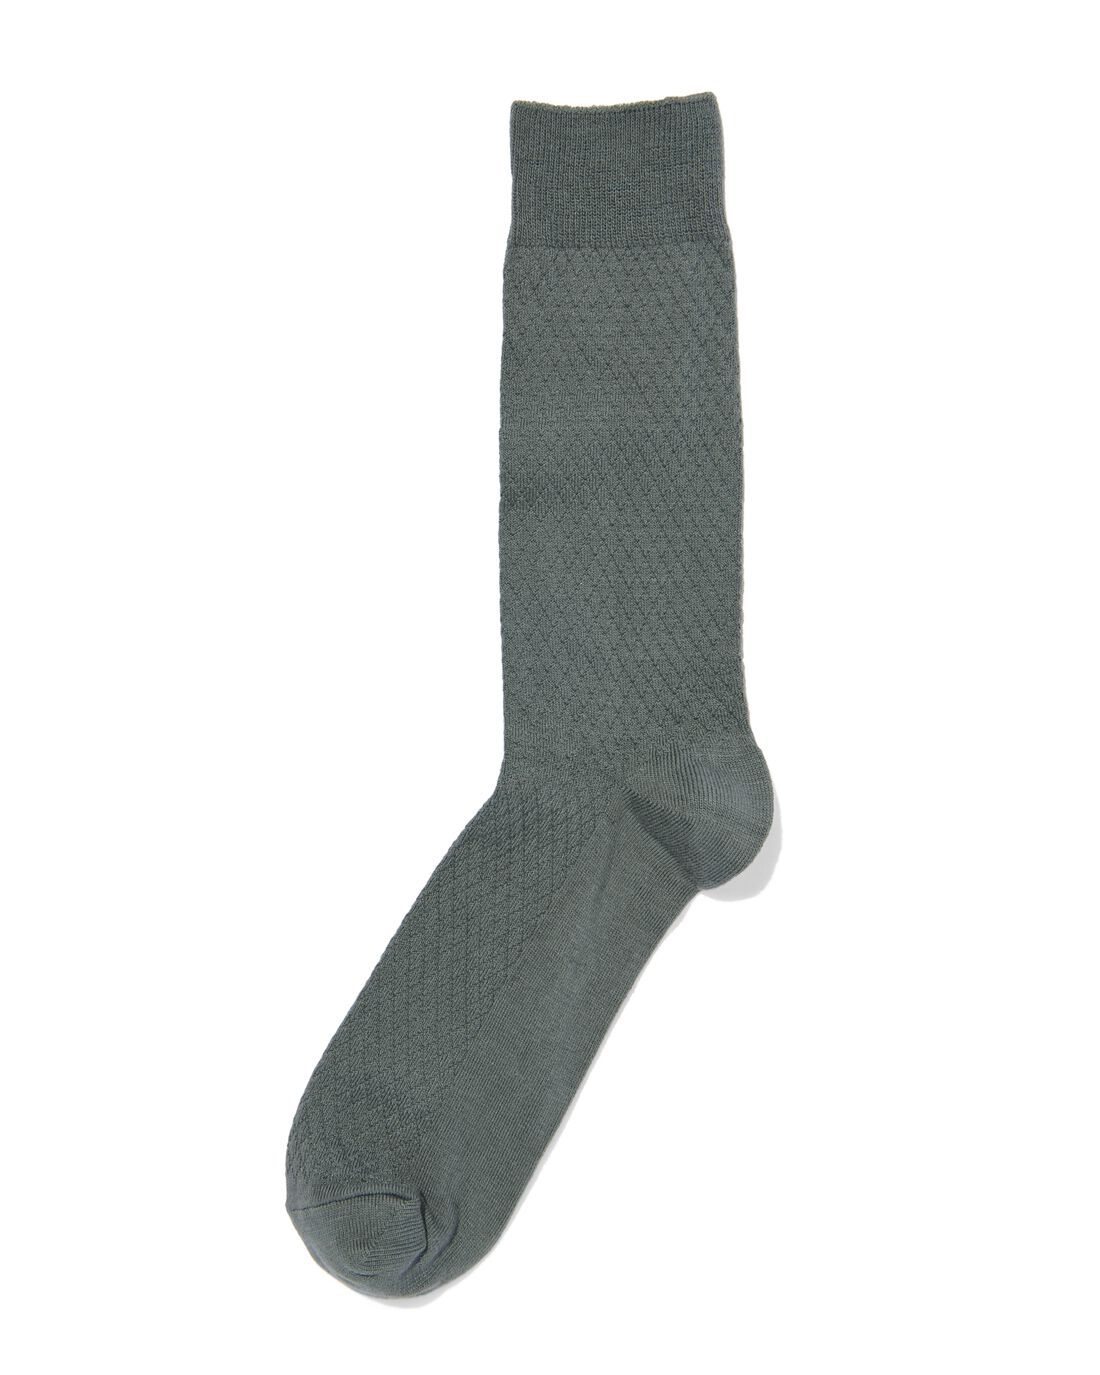 HEMA Heren Sokken Met Katoen Textuur Donkergroen (donkergroen)